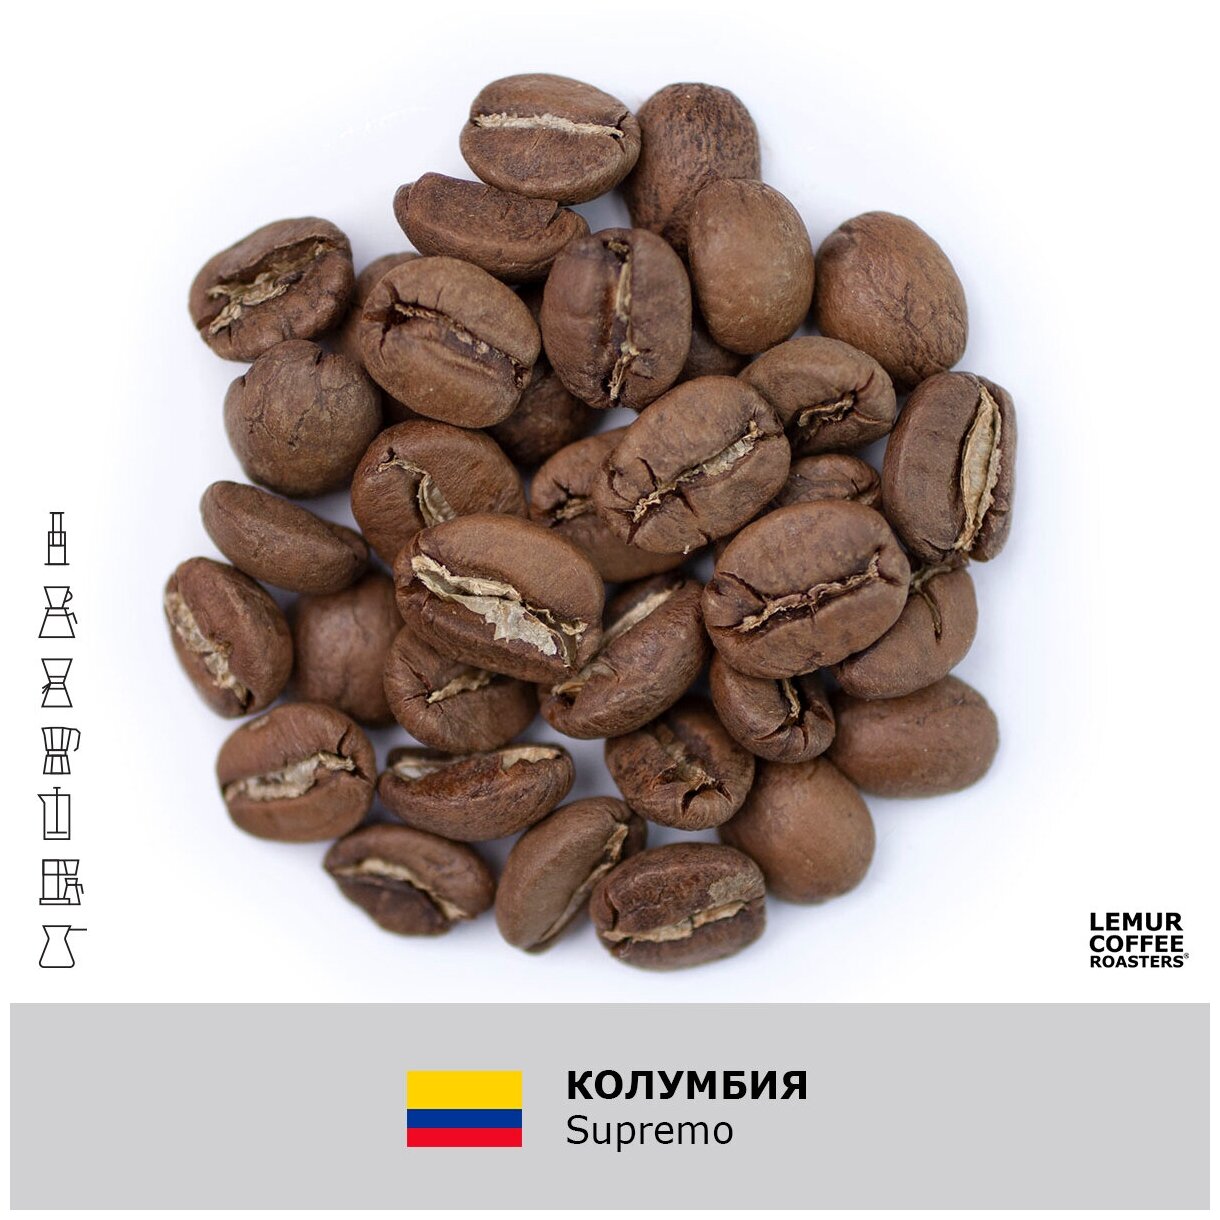 Свежеобжаренный кофе в зернах Колумбия Supremo Lemur Coffee Roasters, 1кг